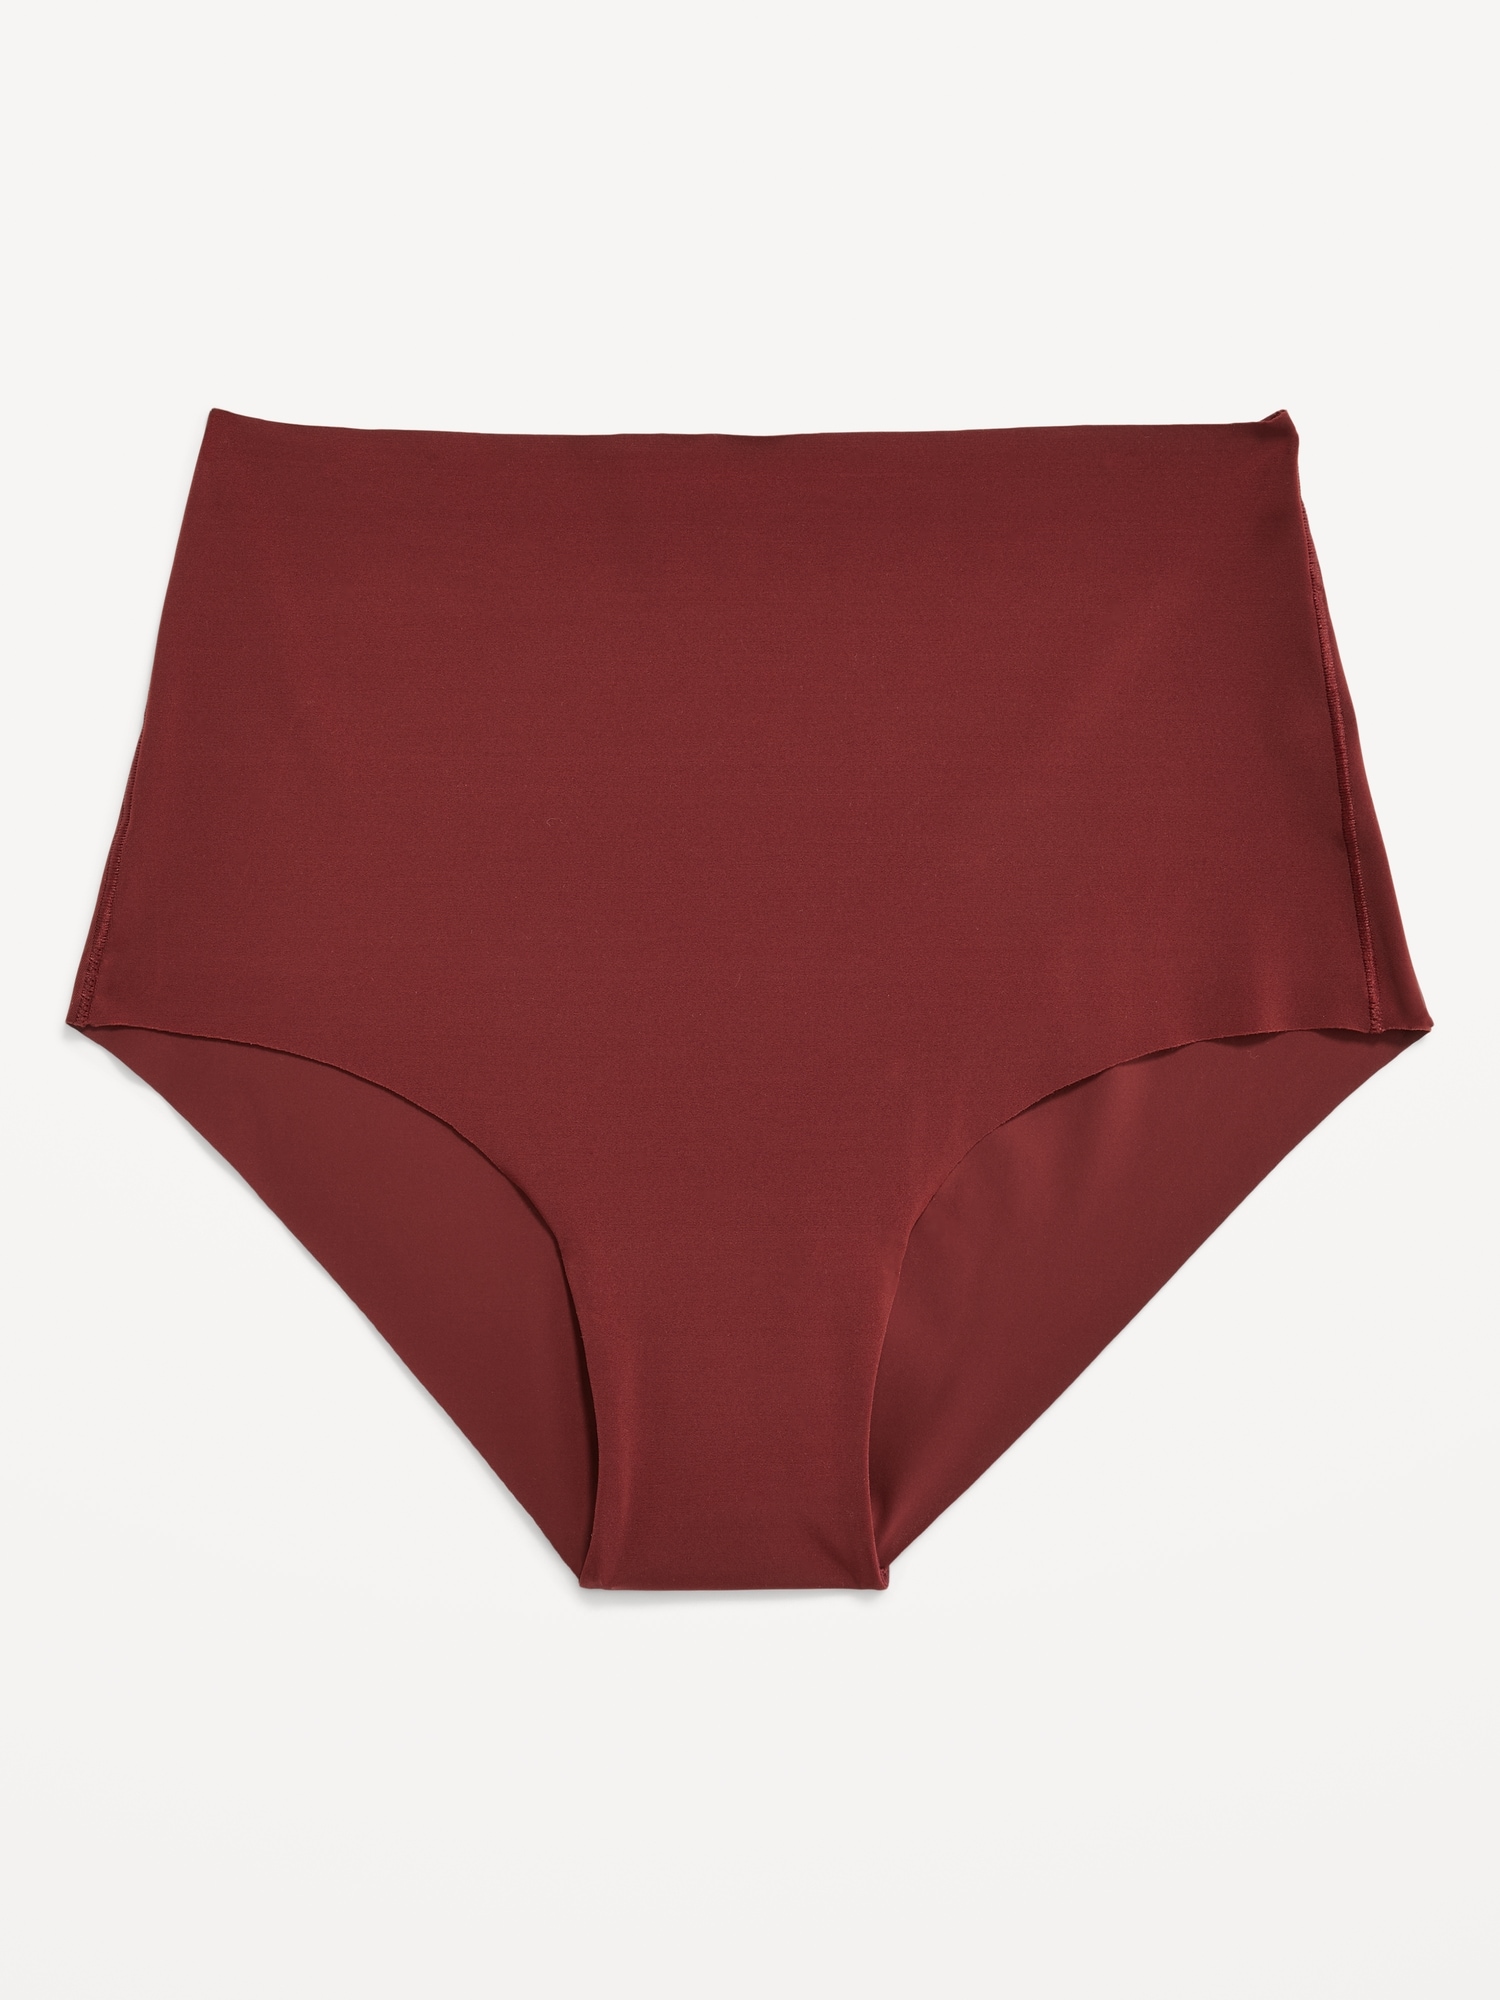 Girls Vintage Underwear Unused Vintage Red Underwear Underpants 100% Cotton  NOS Size 8-10 Years -  Canada